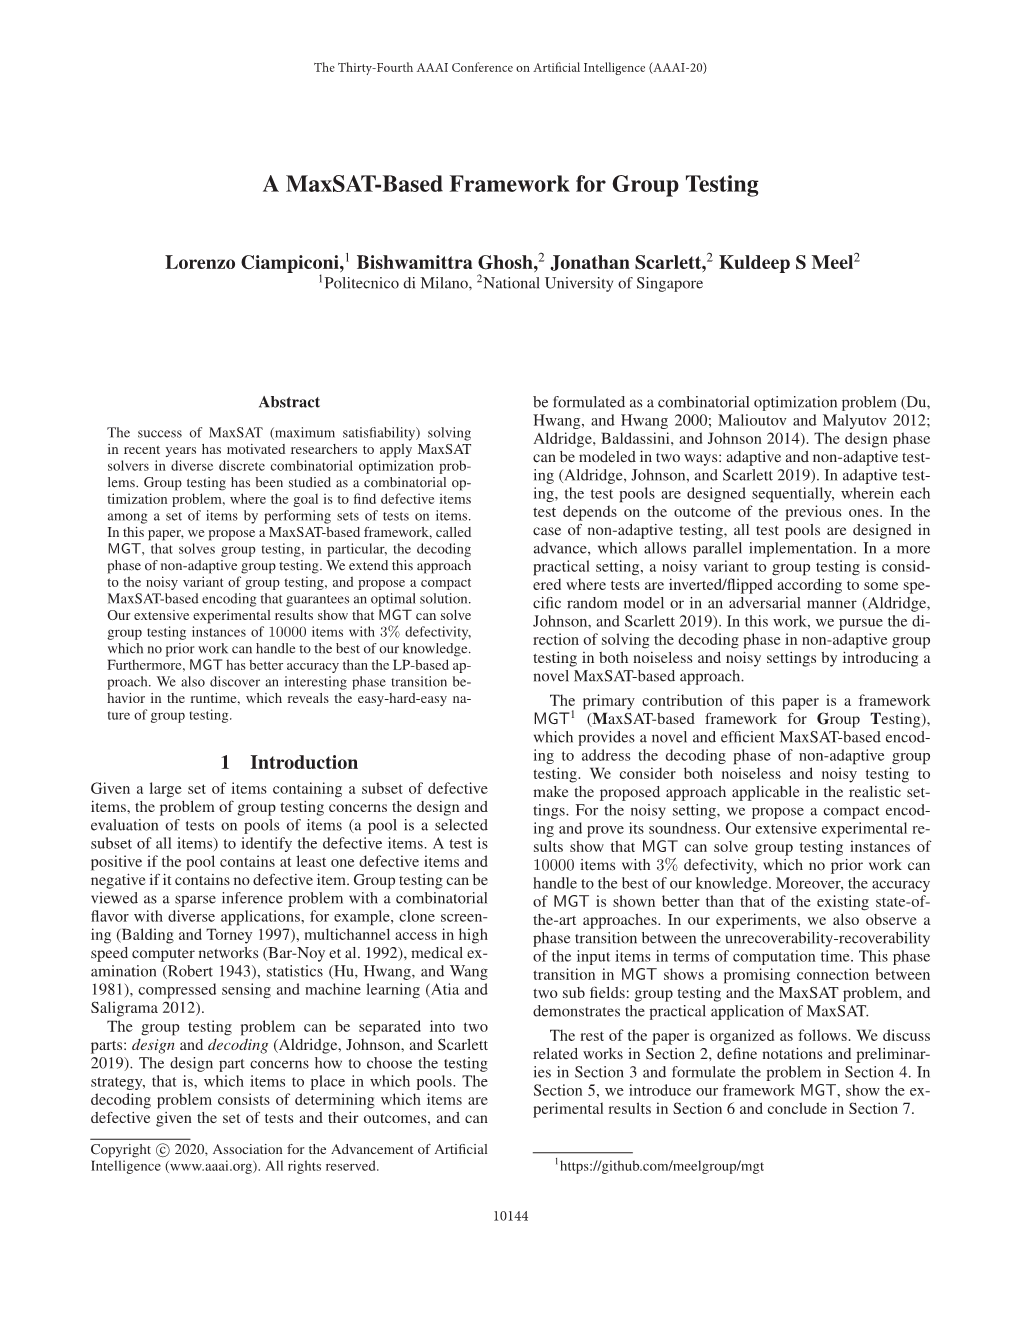 A Maxsat-Based Framework for Group Testing